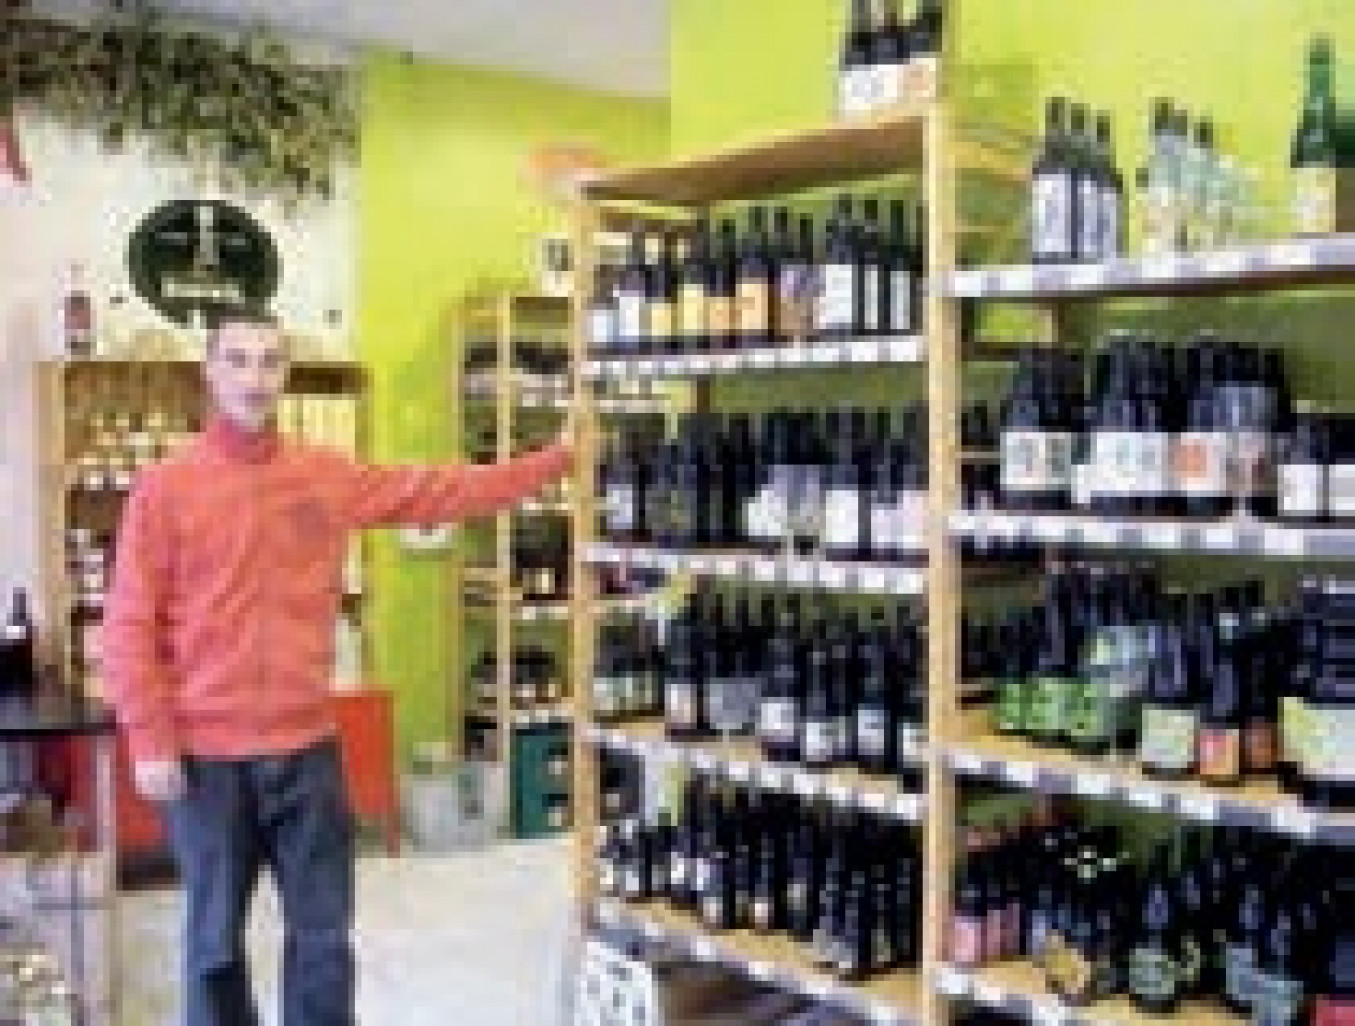 La cave du Houblon compte plus de 200 références de bières régionales et belges.